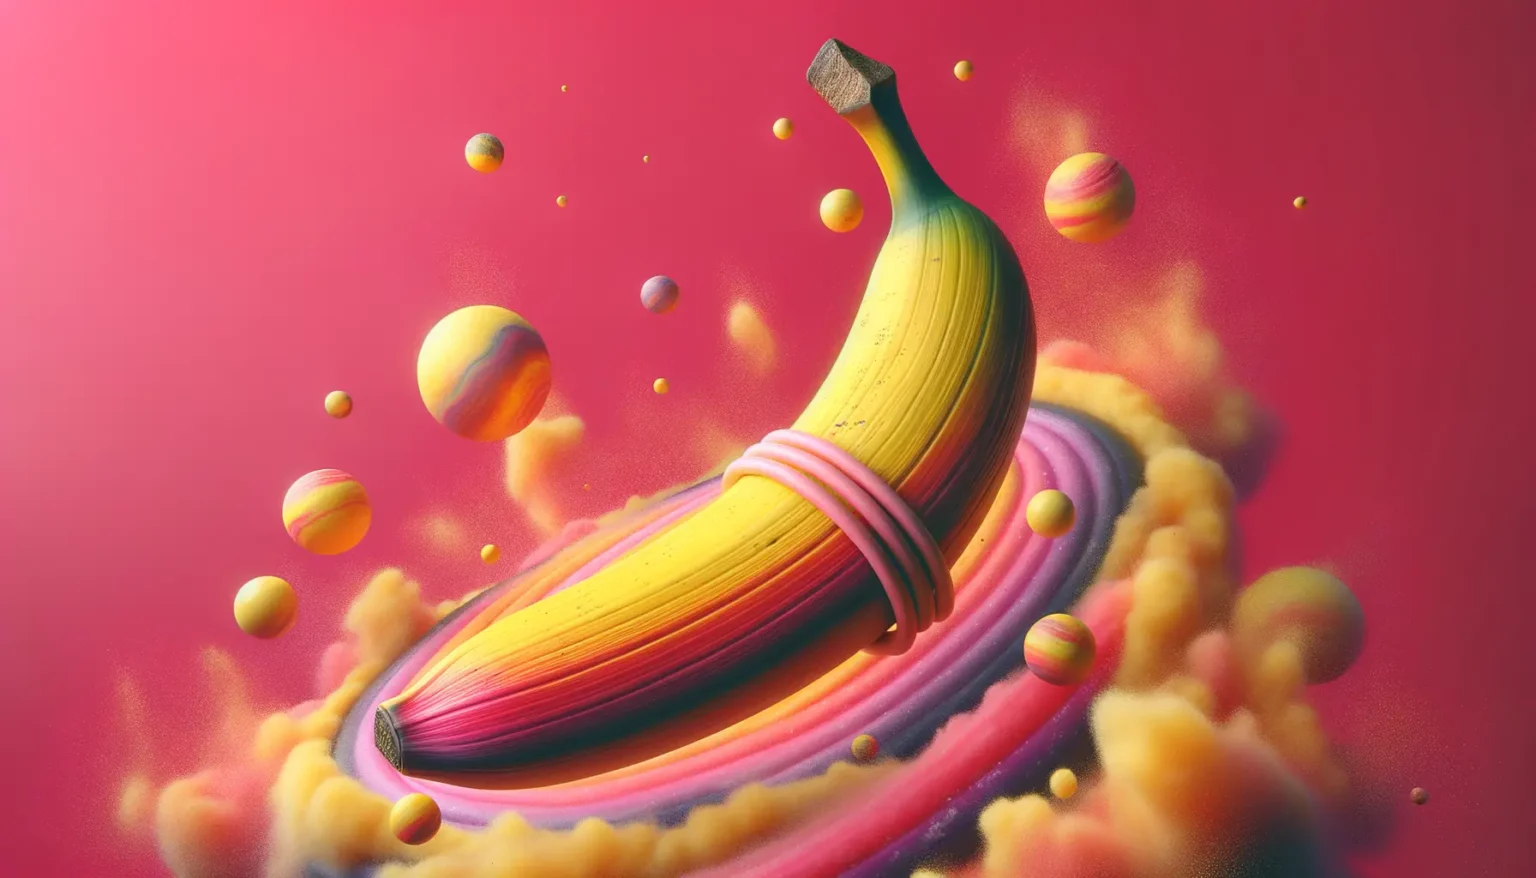 Eine stilisierte, surreale Darstellung einer Banane mit rosa Gummibändern umwickelt, schwebend auf einem leuchtenden, pastellfarbenen Wirbel vor einem vibrierenden pinken Hintergrund, begleitet von schwebenden, bunten Kugeln und nebligen Explosionen.